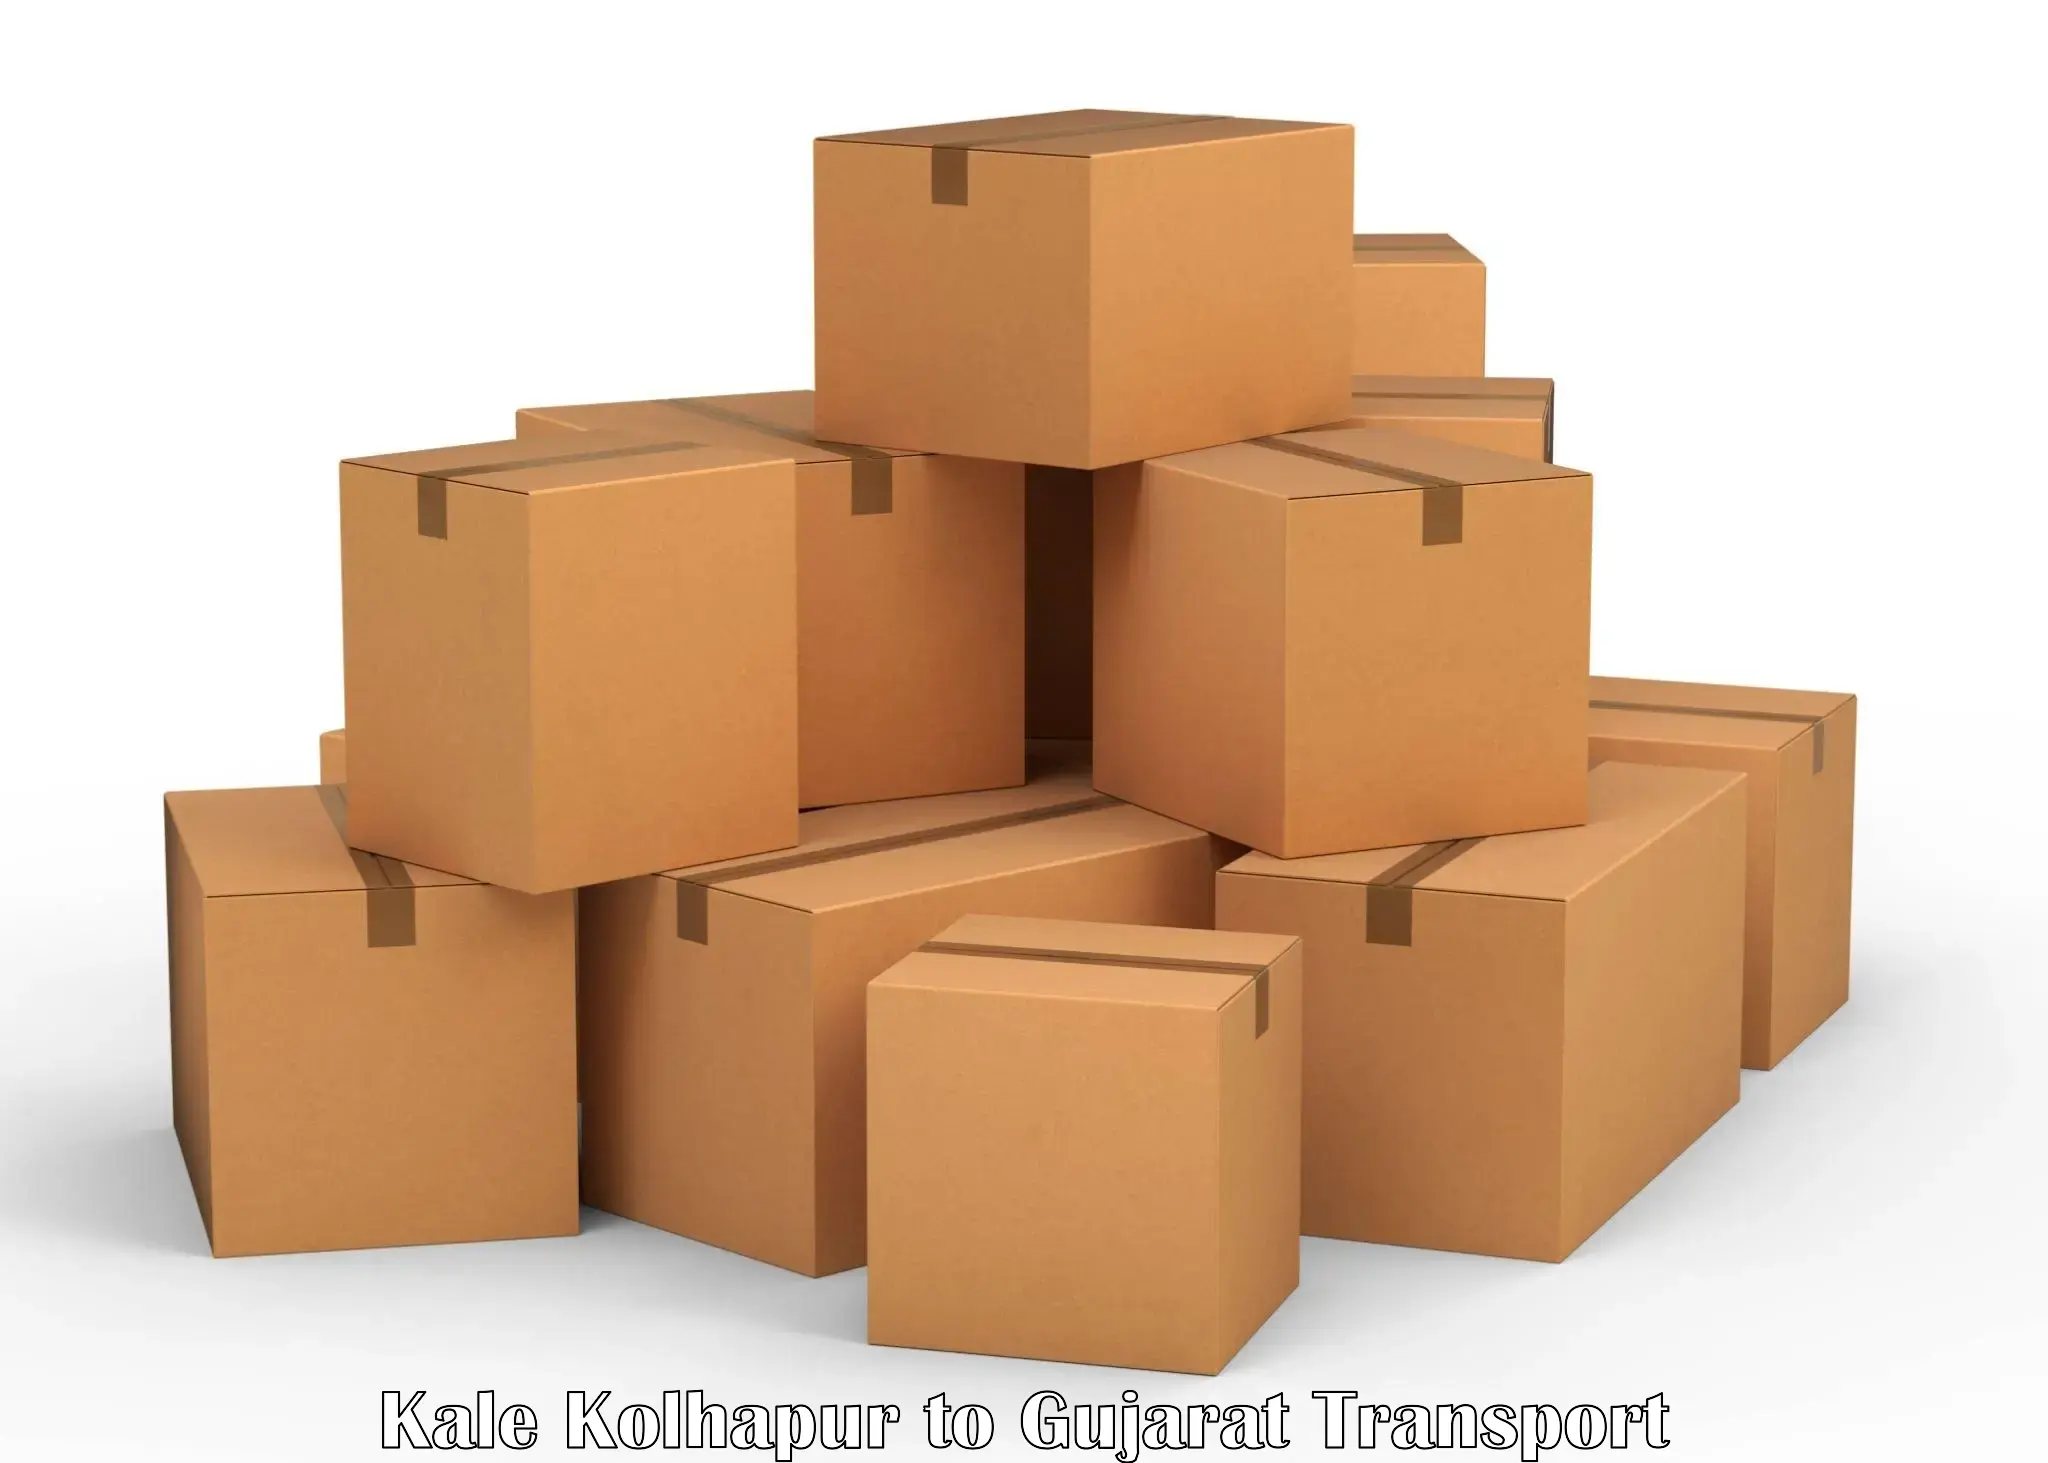 Vehicle parcel service Kale Kolhapur to Junagadh